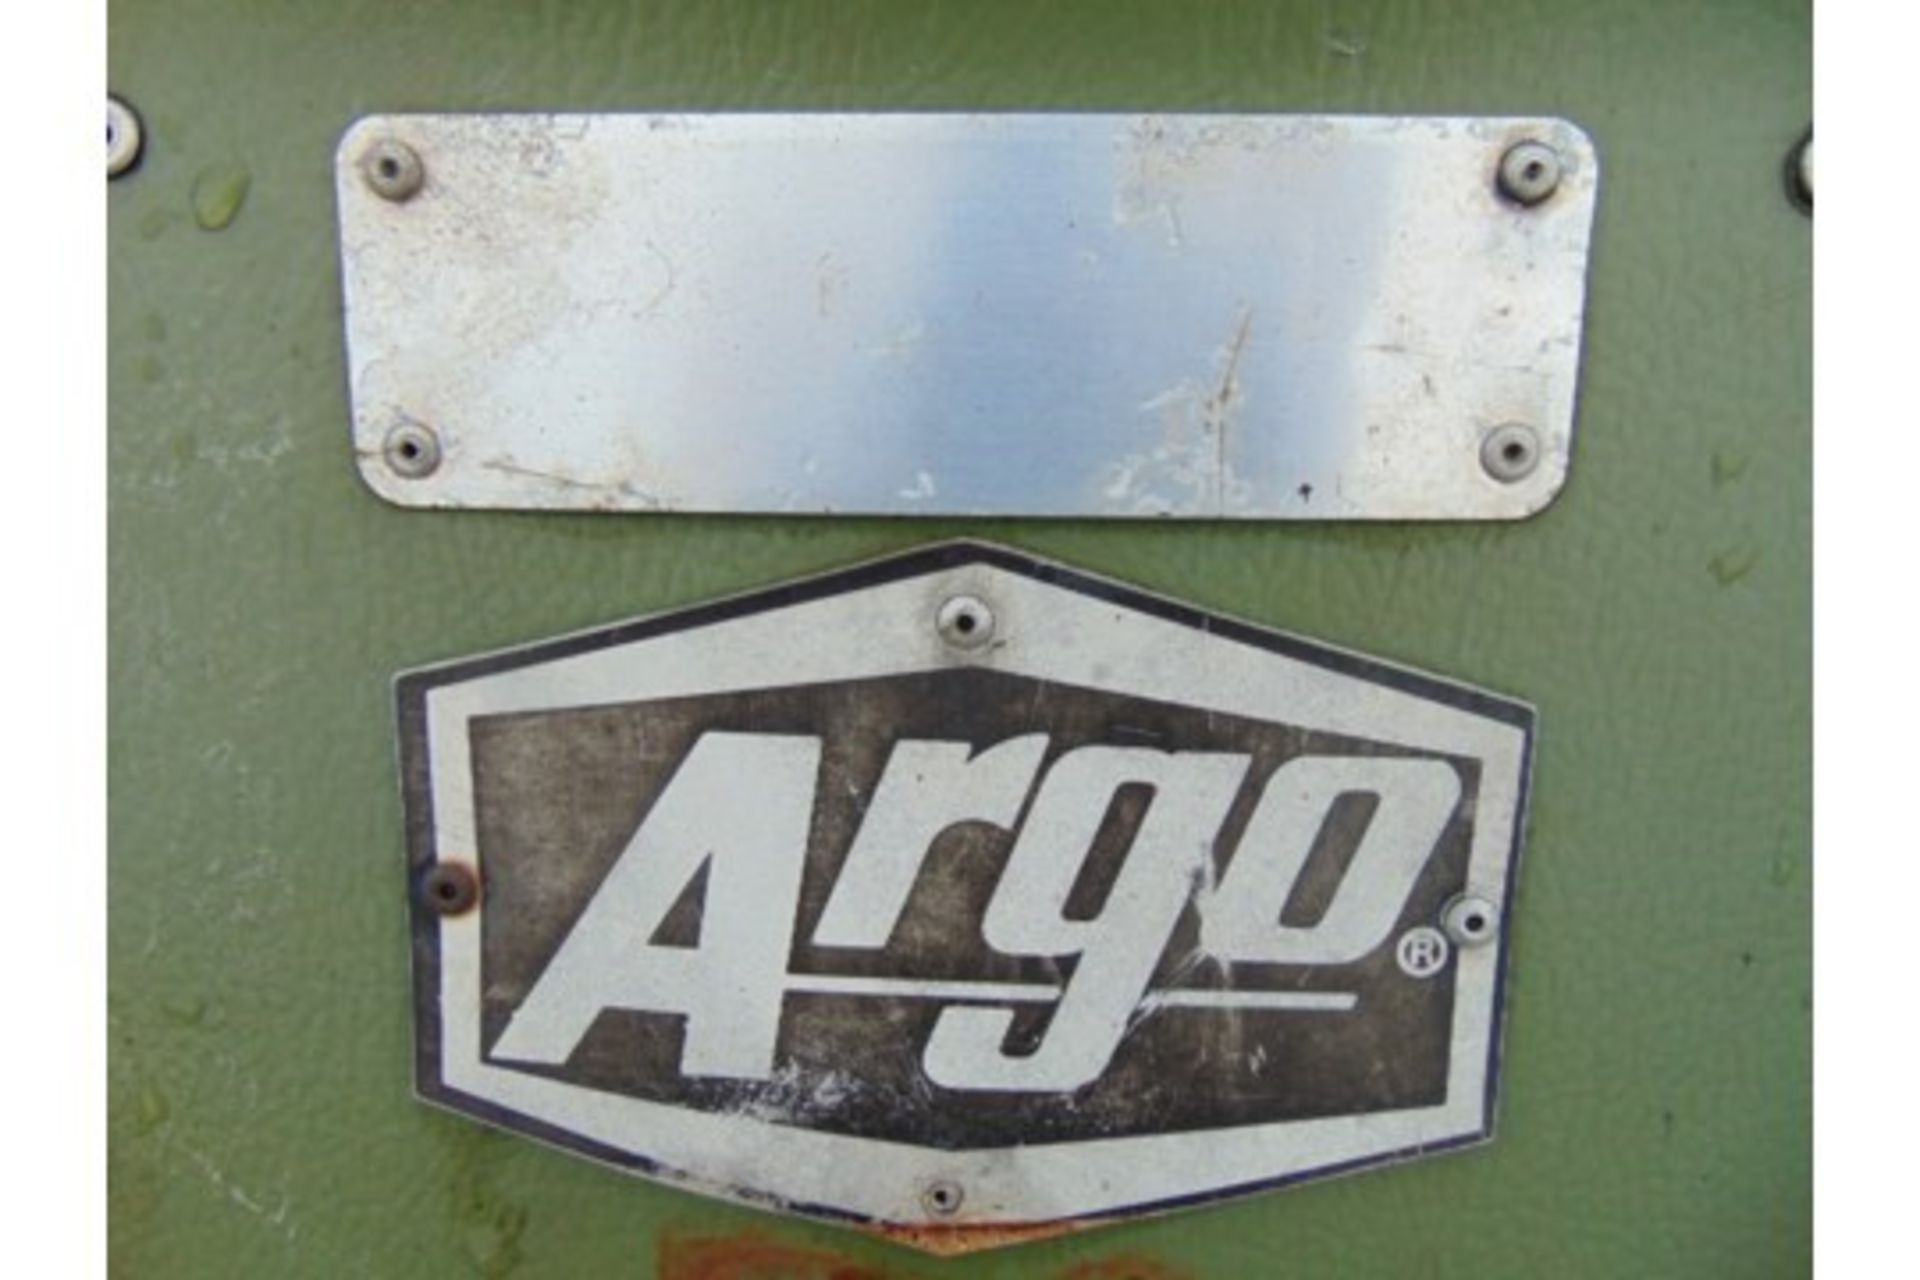 Argocat 8x8 Magnum Amphibious ATV with Canopy - Image 14 of 14